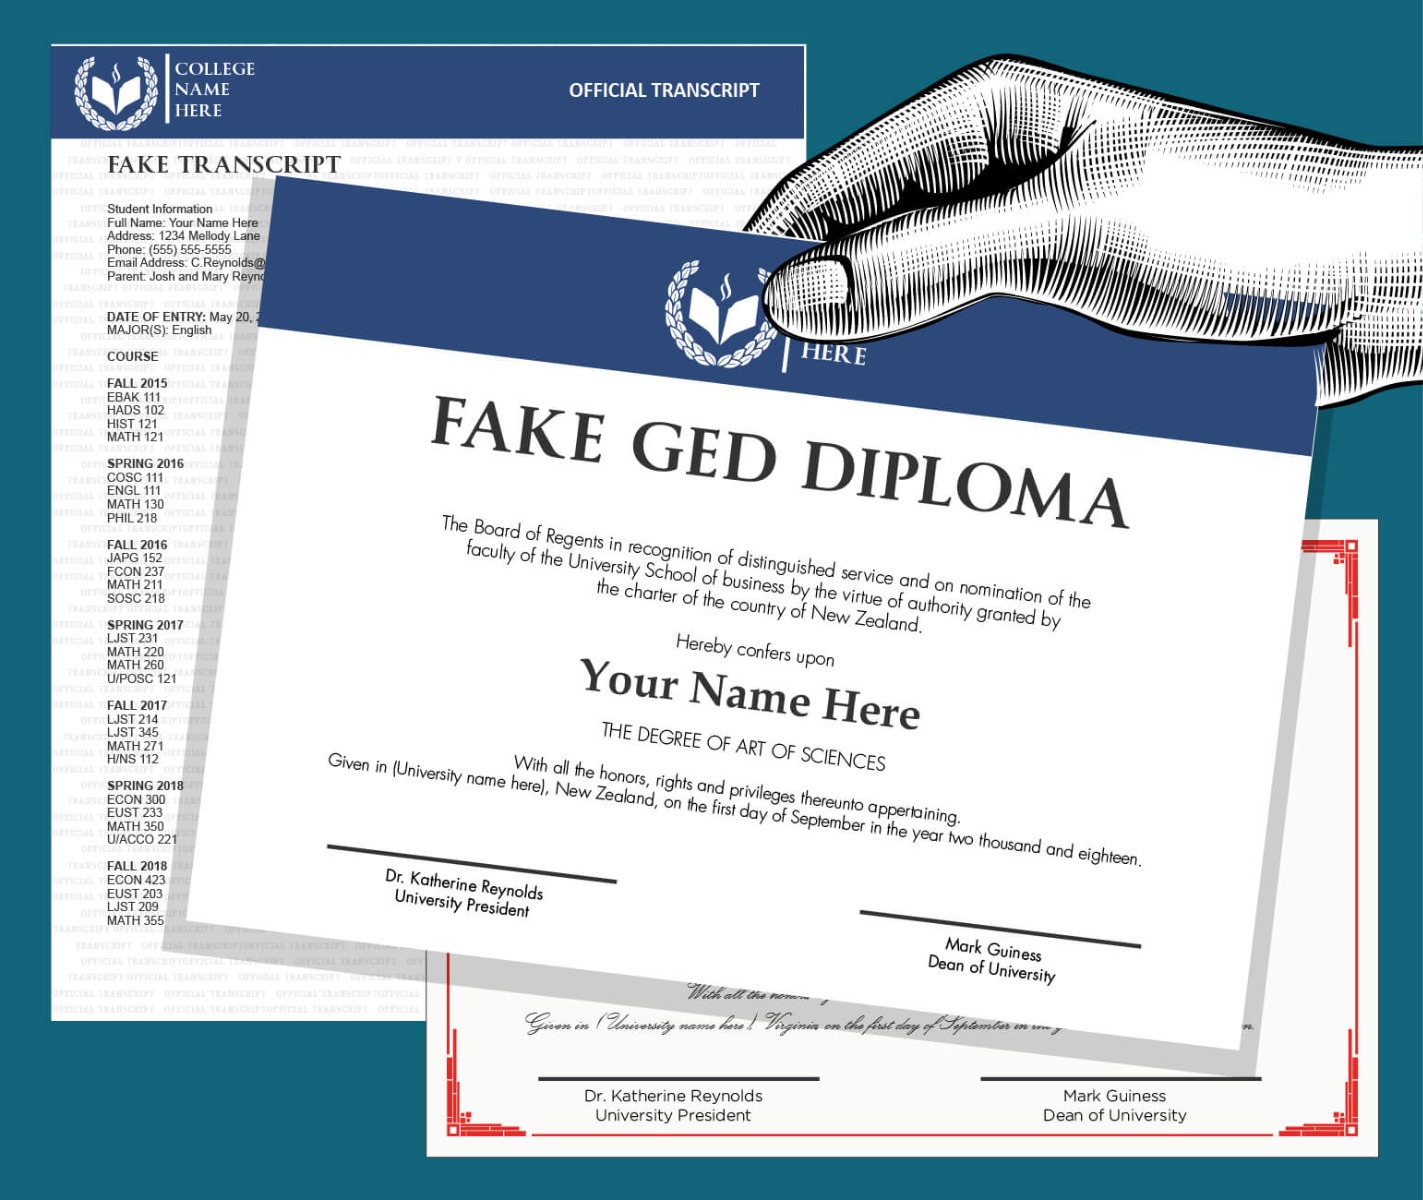 Fake GED Diplomas